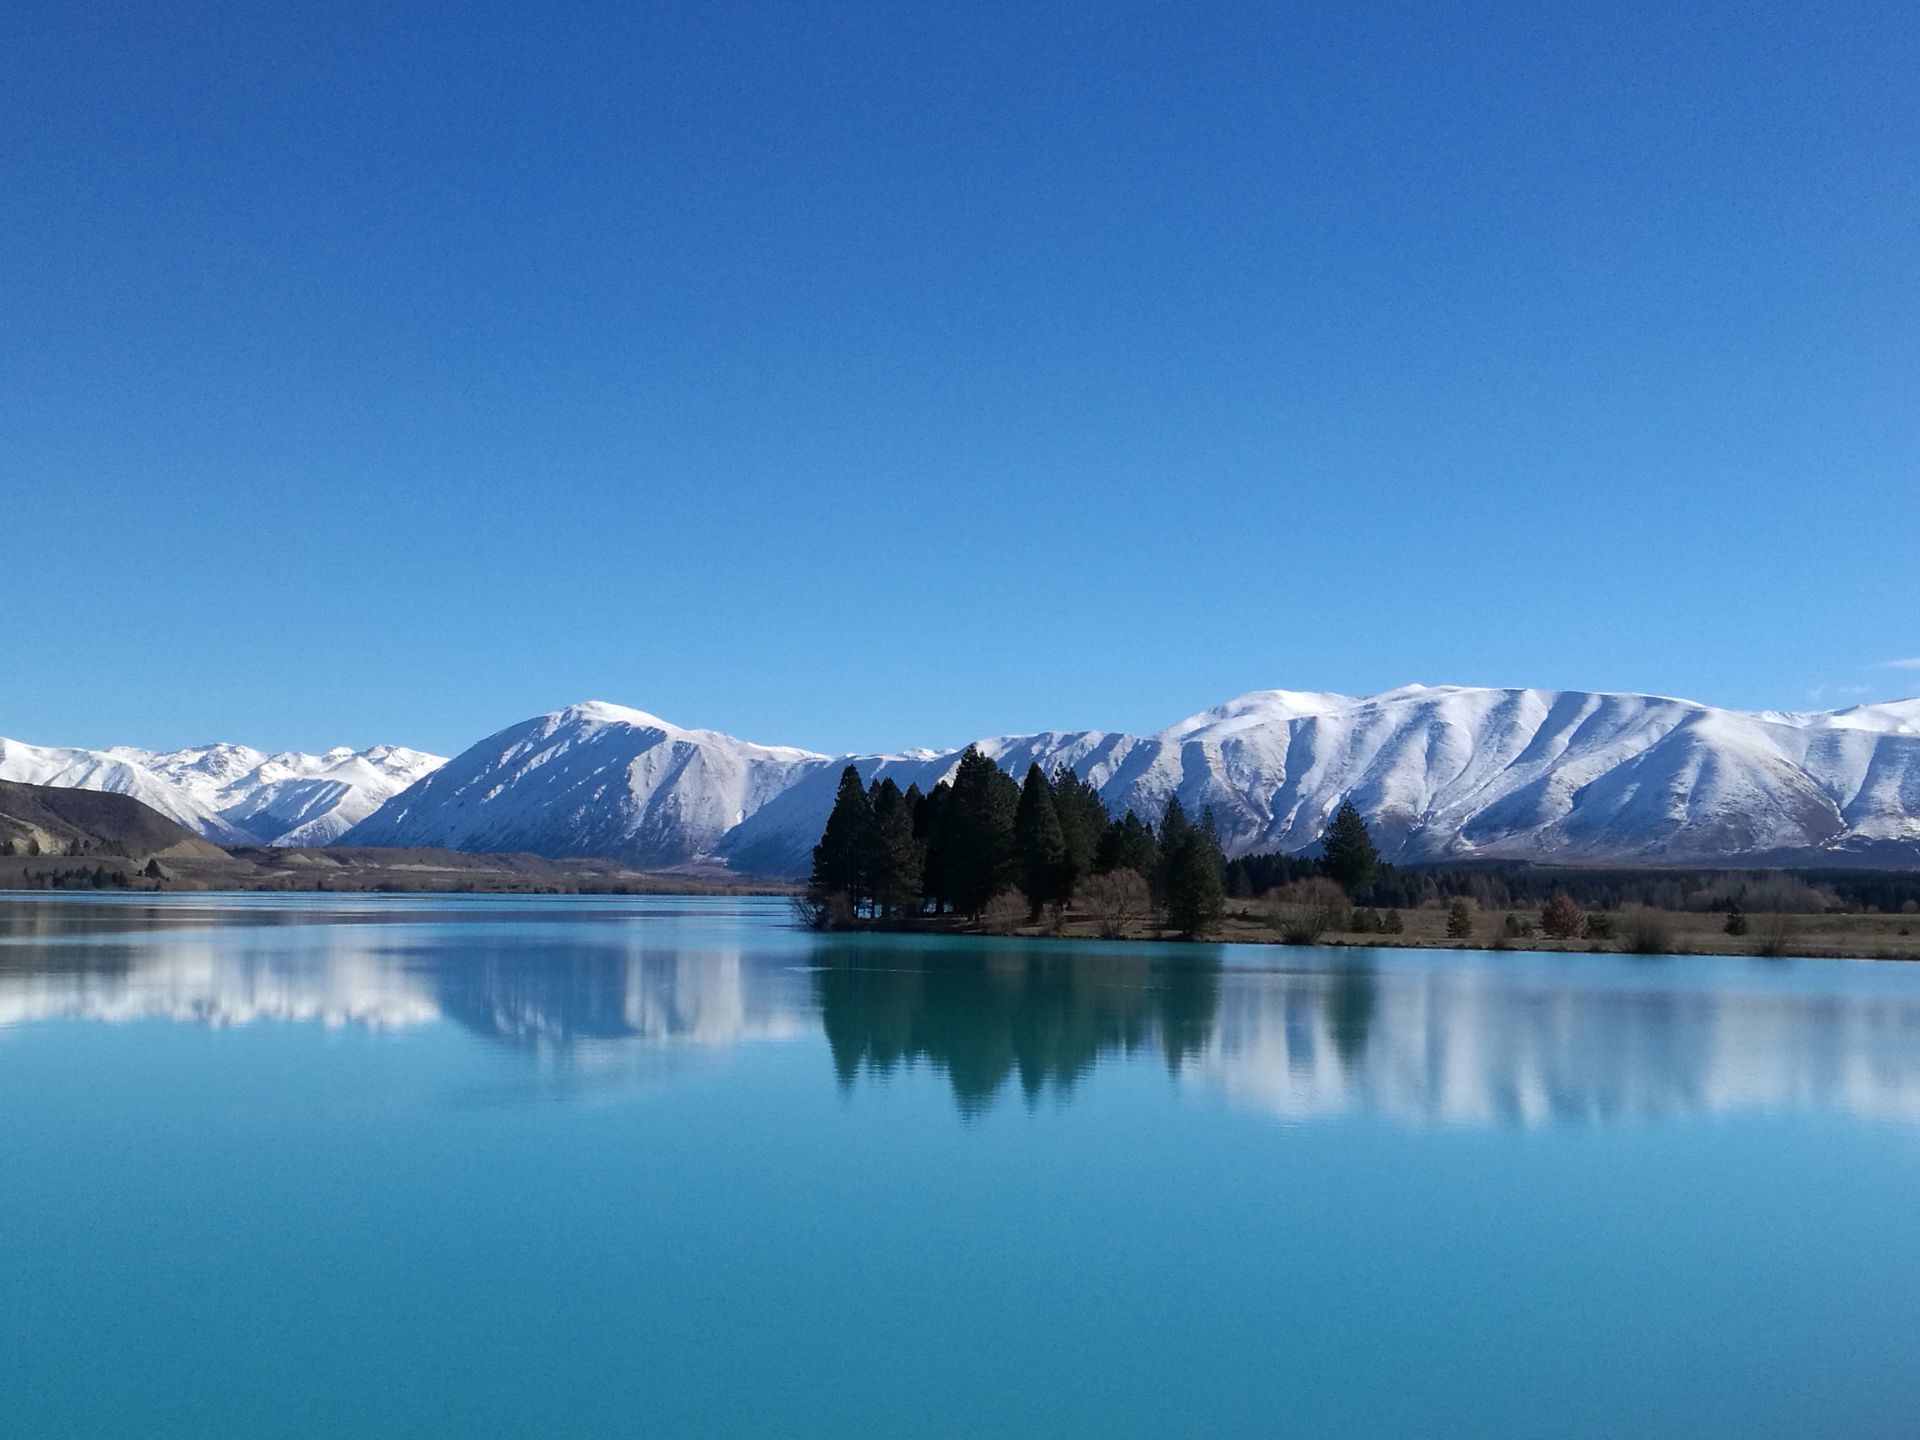 普卡基湖毗邻库克山 ，冰川所融化的雪水注入其中，造就了独特的奶蓝色，照片并不能完全反映其令人震撼的颜